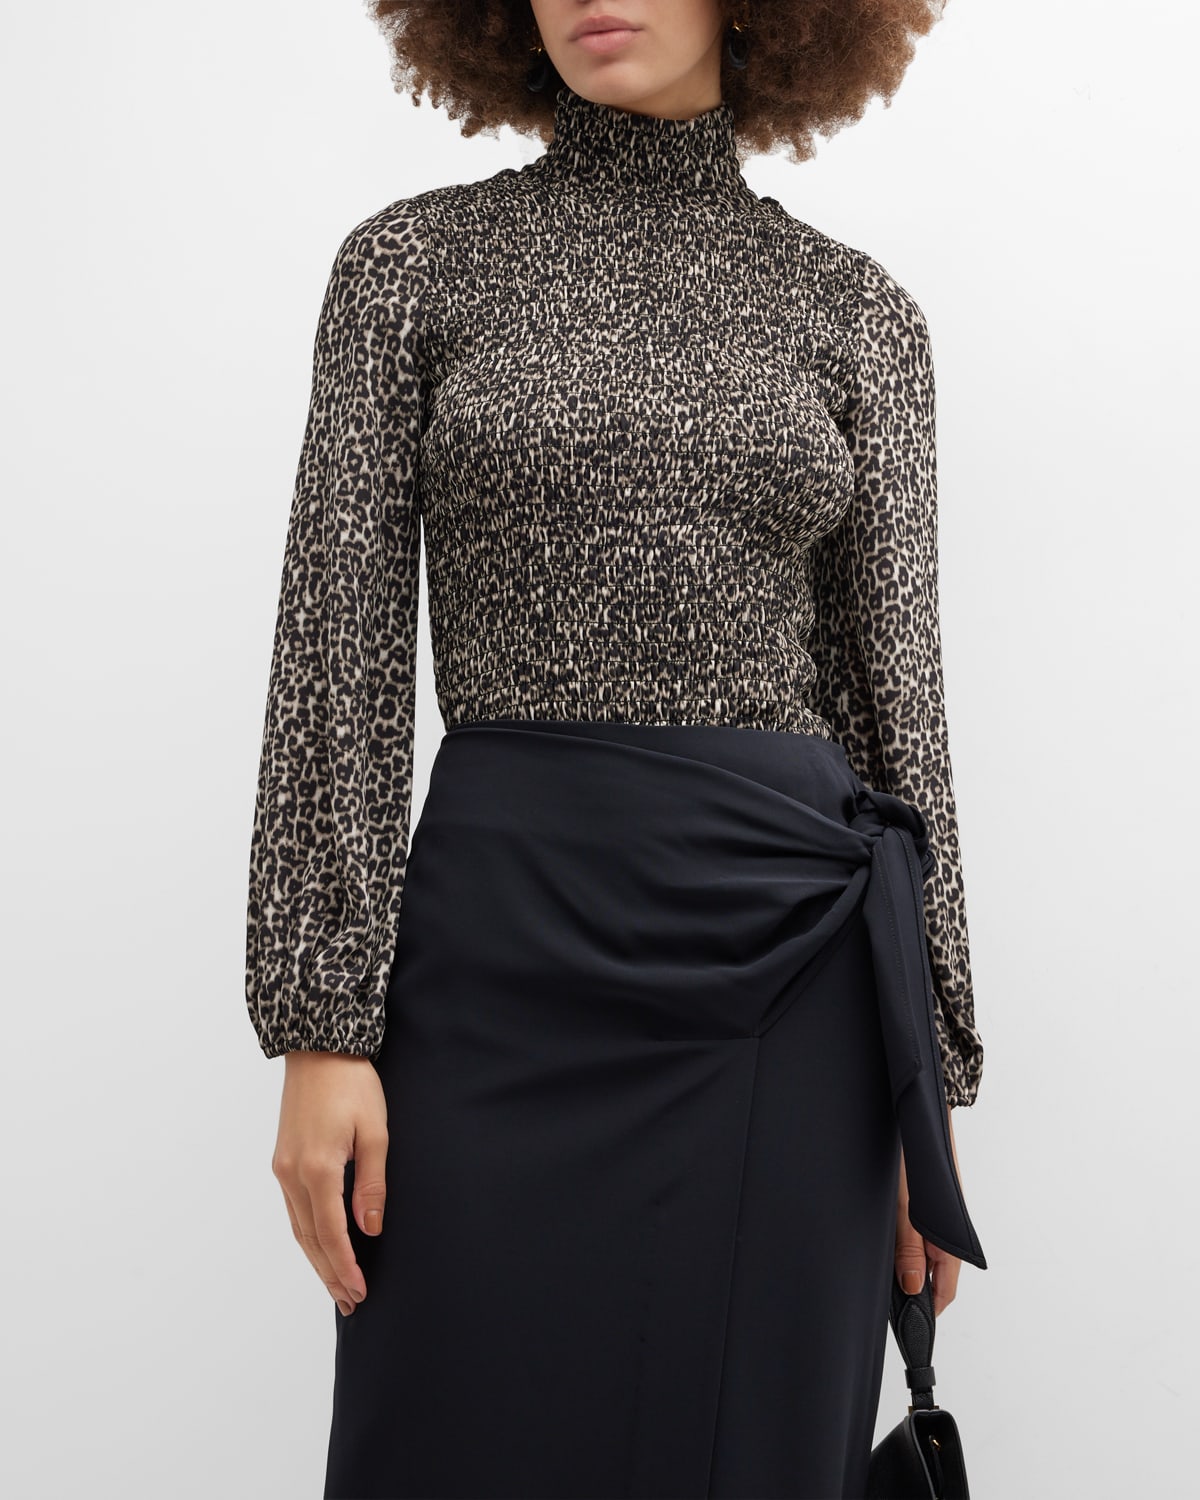 Donna Karan Smocked Leopard-Print Turtleneck Top